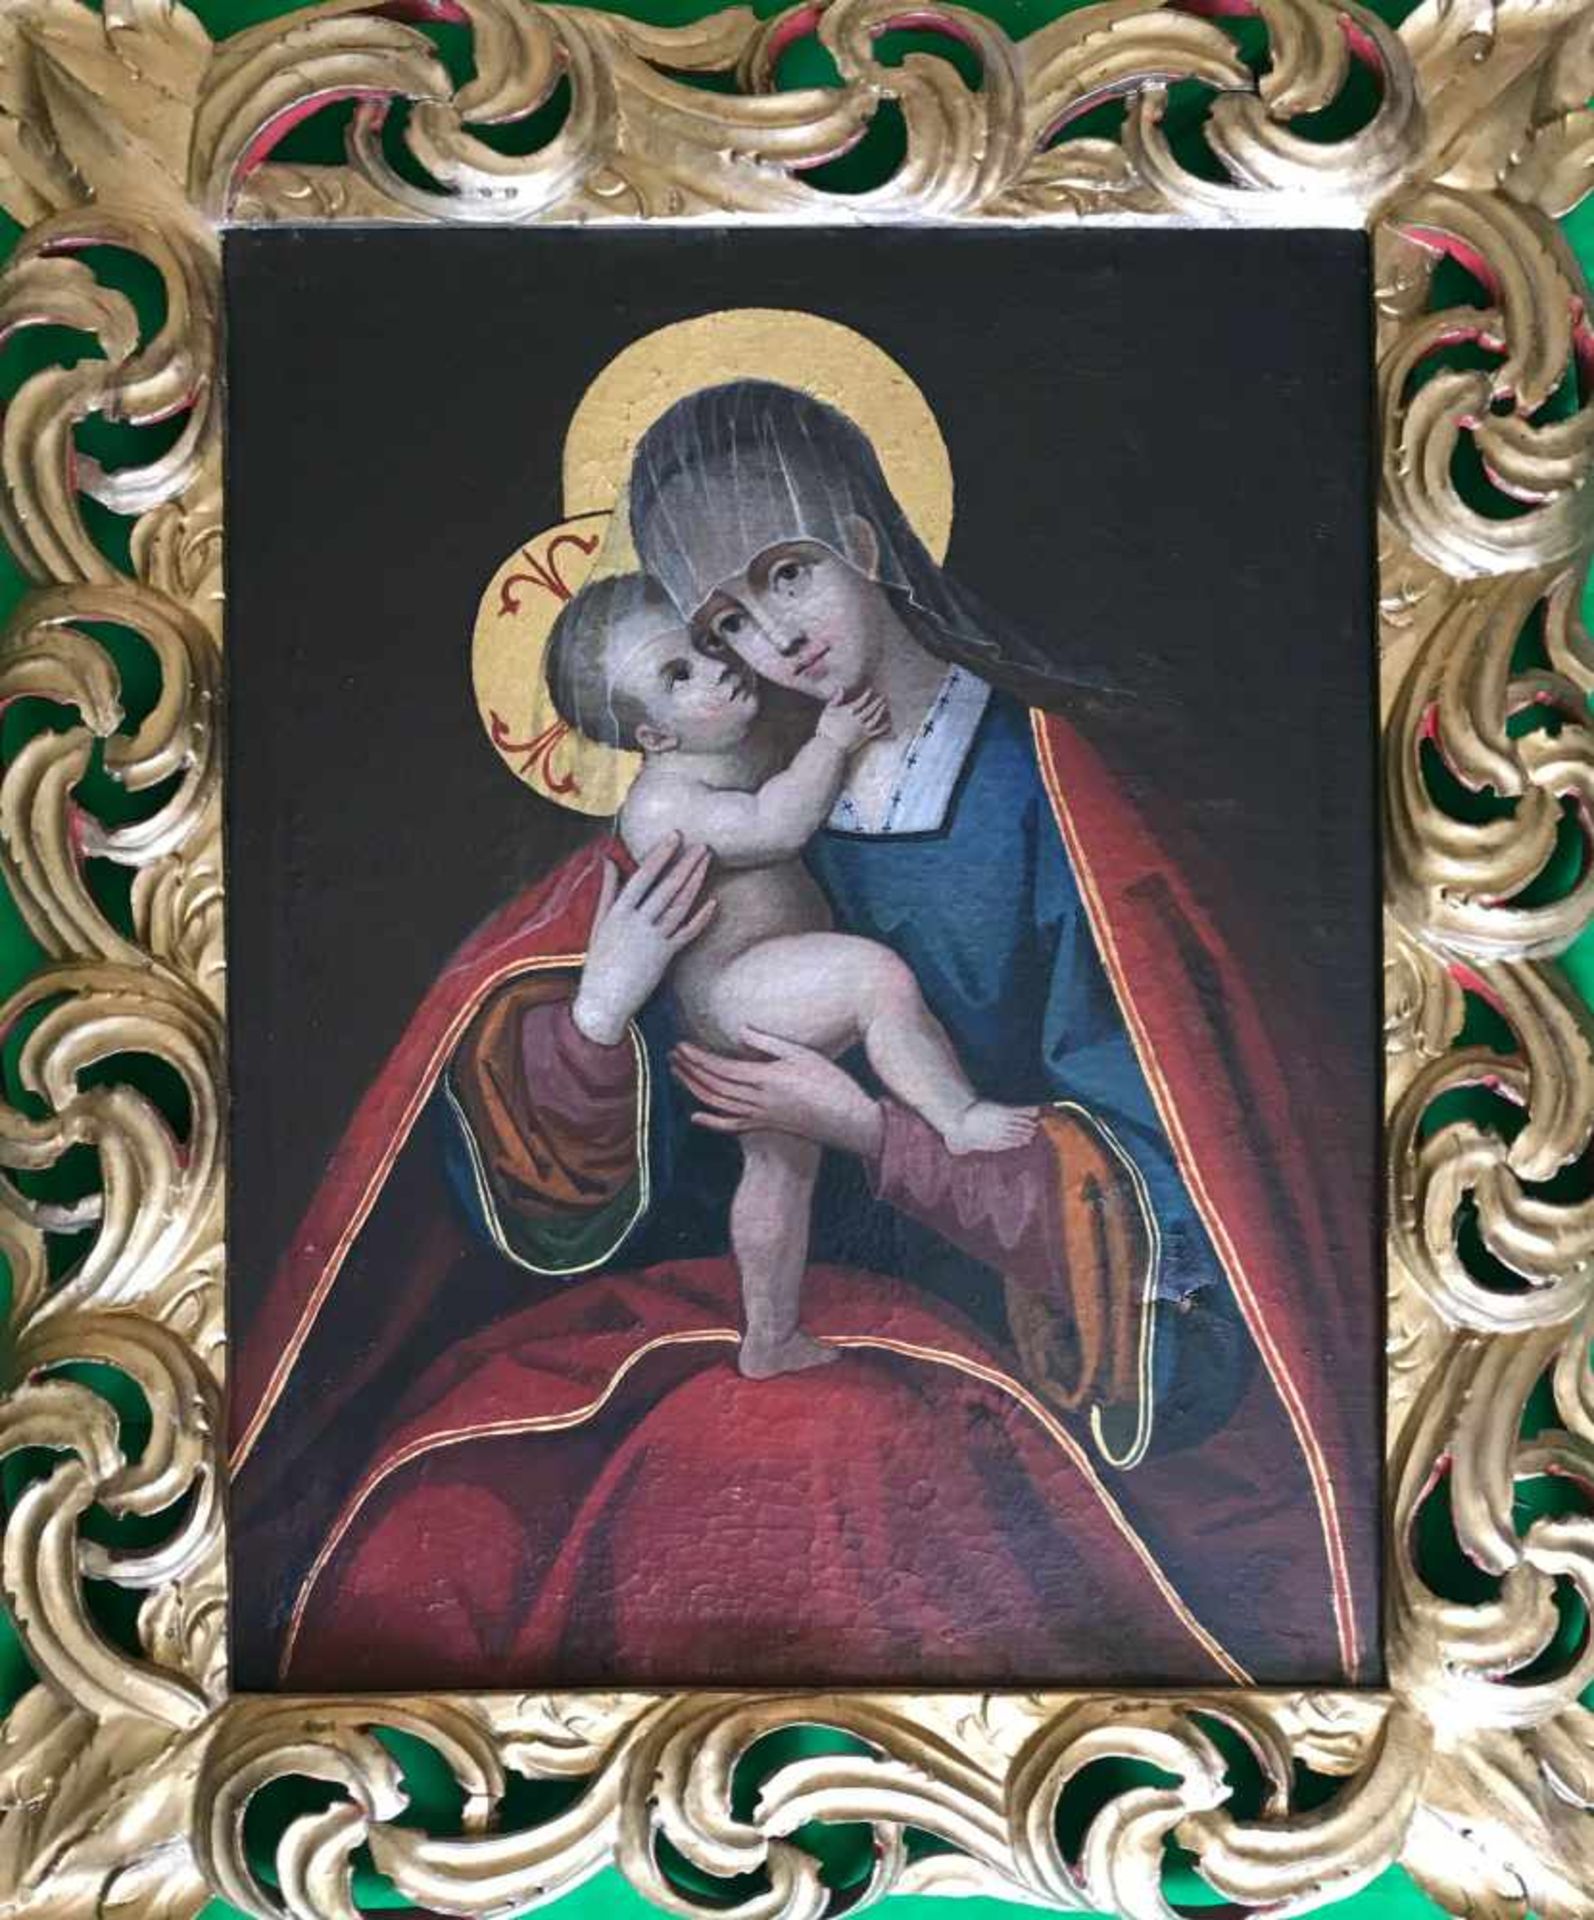 Unbekannter Künstler, 18. Jh., Madonna. Unknown artist, Virgin and child. Vor dunklem Hintergrund